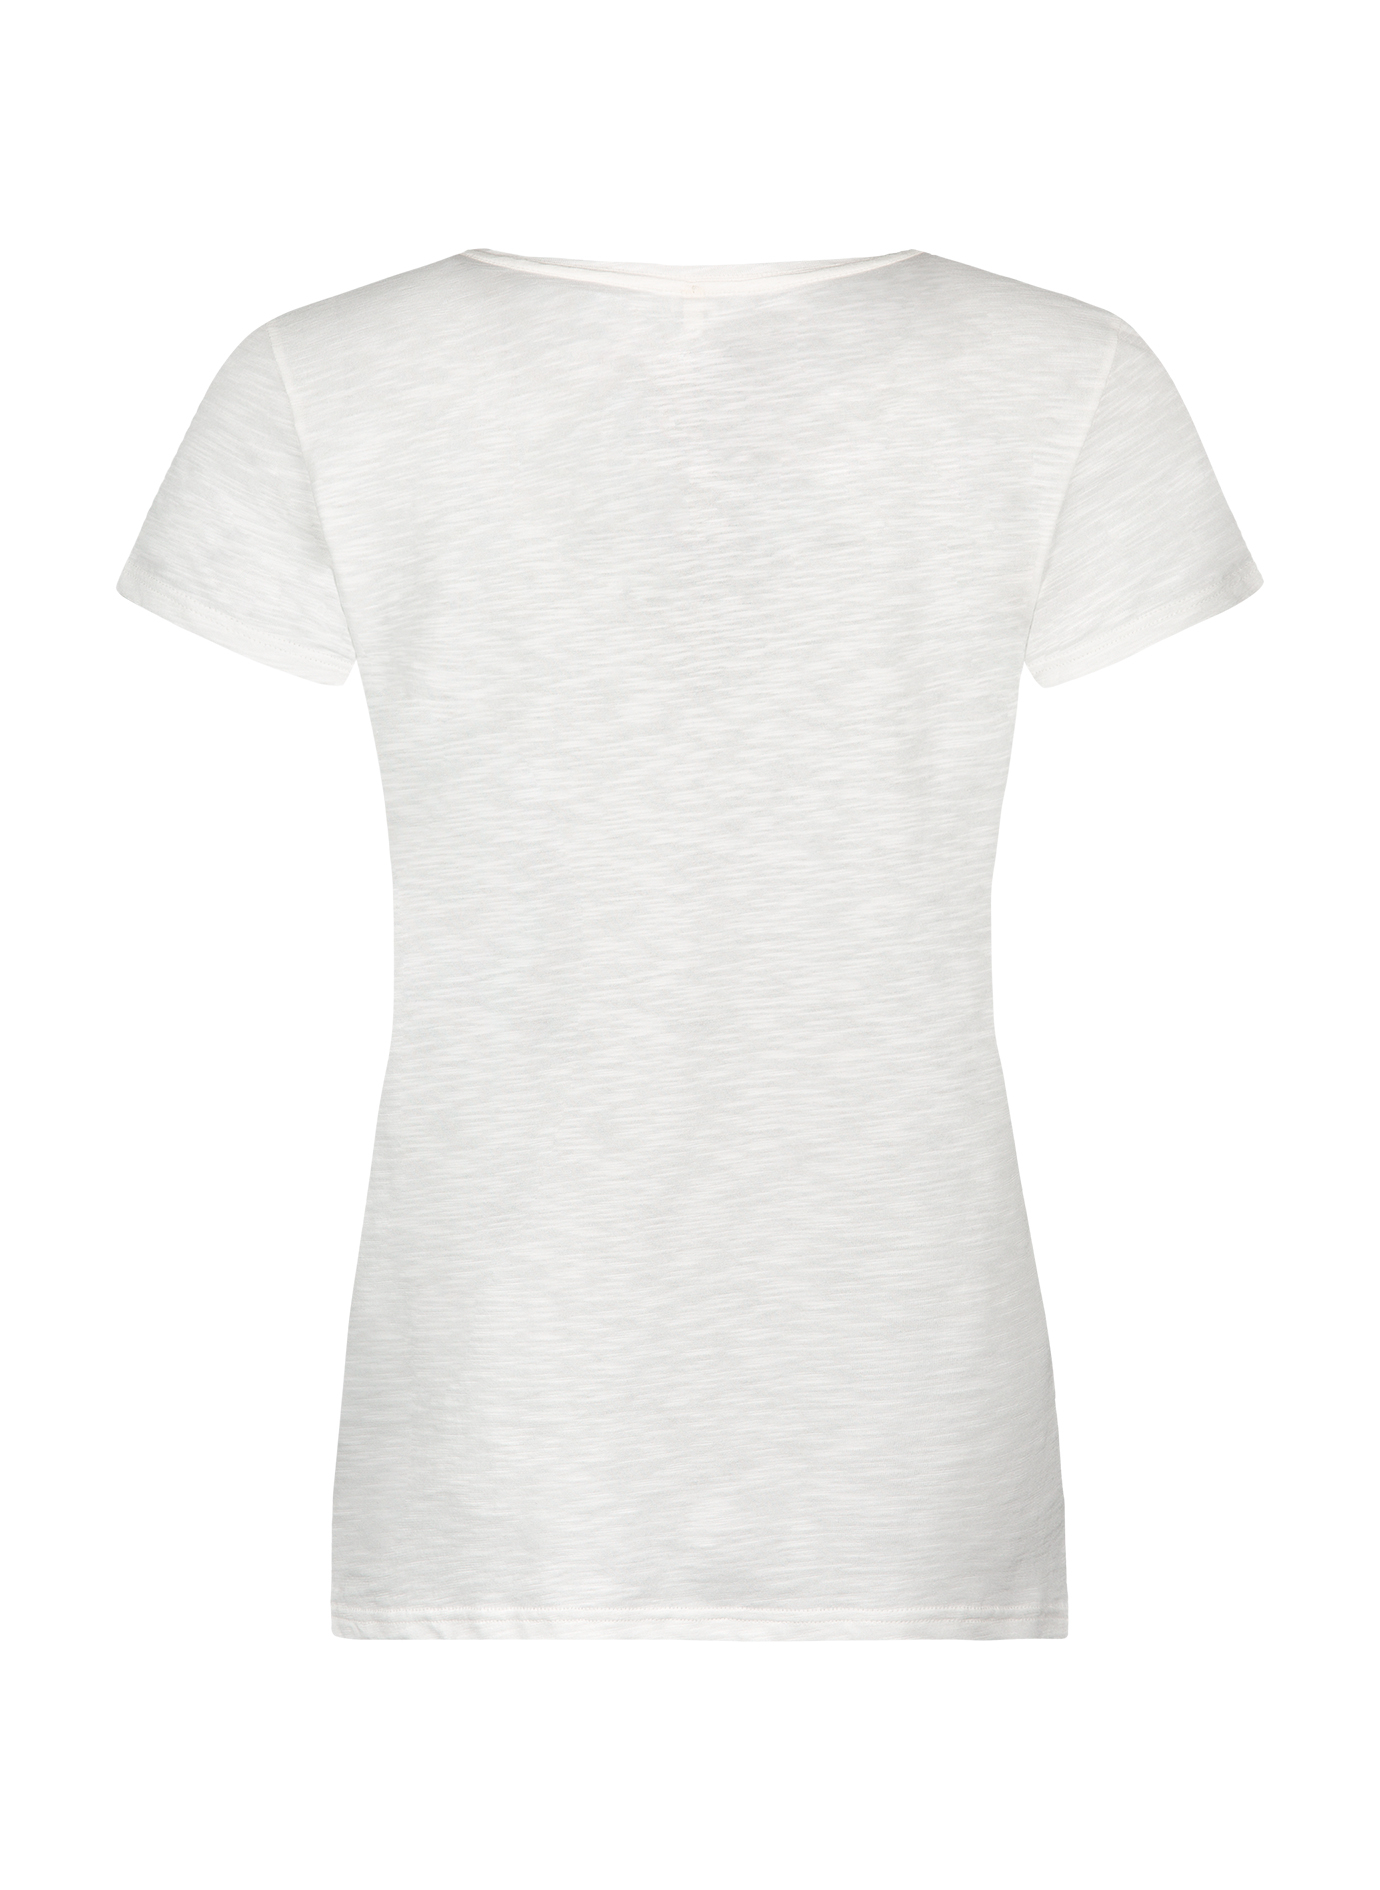 Damen T-Shirt Weiß 